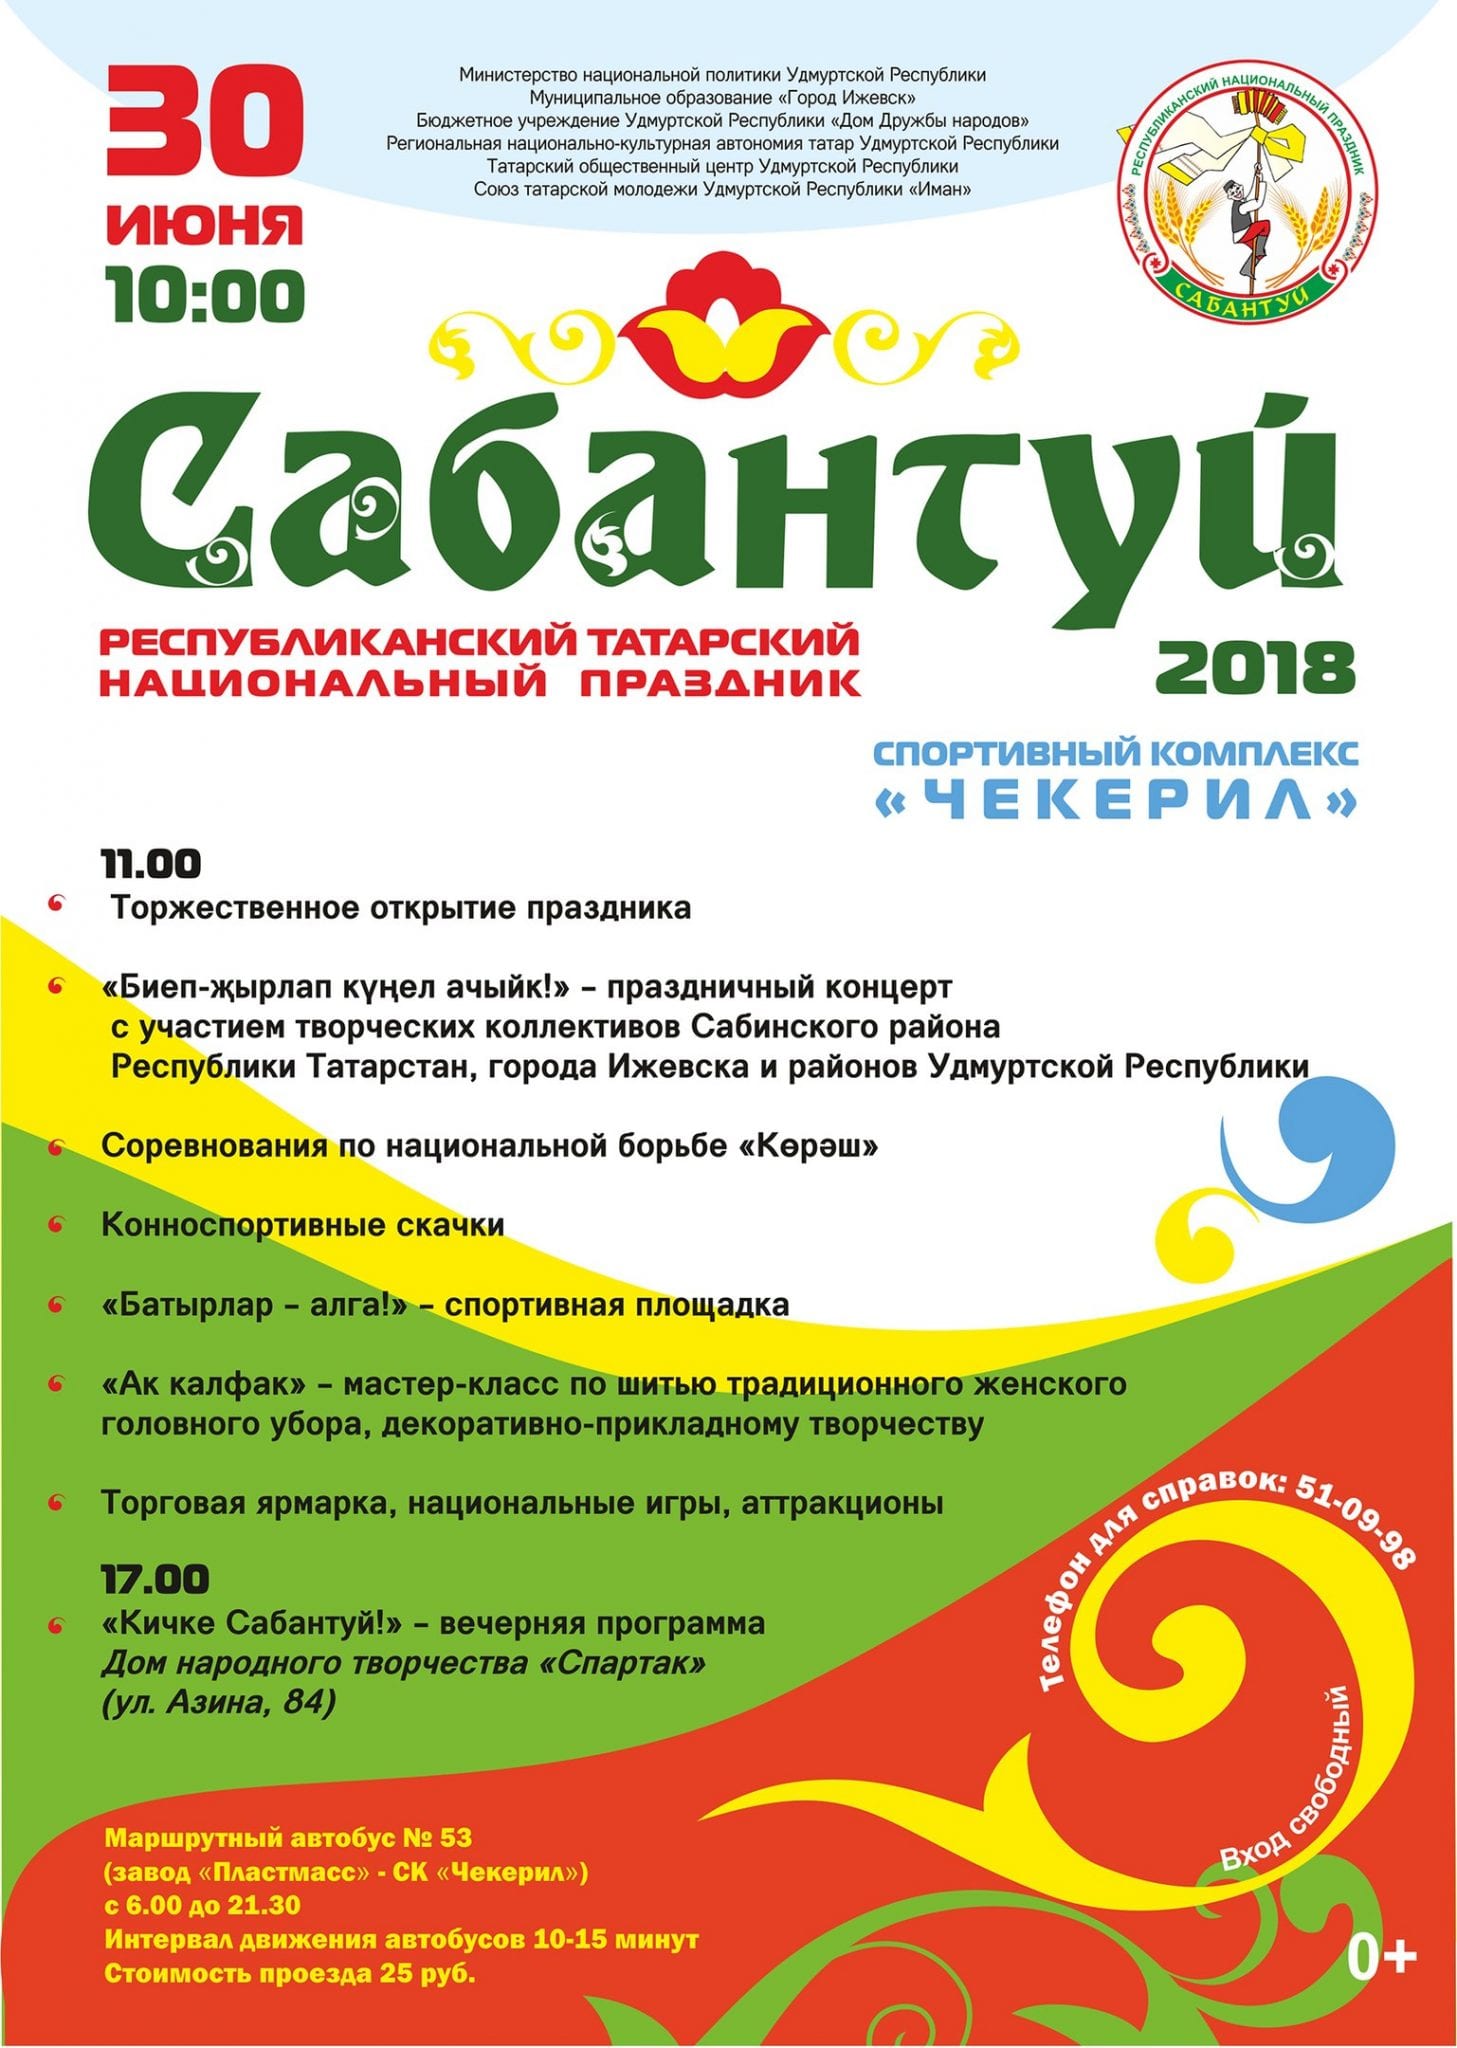 Татарский национальный праздник «сабантуй» 15